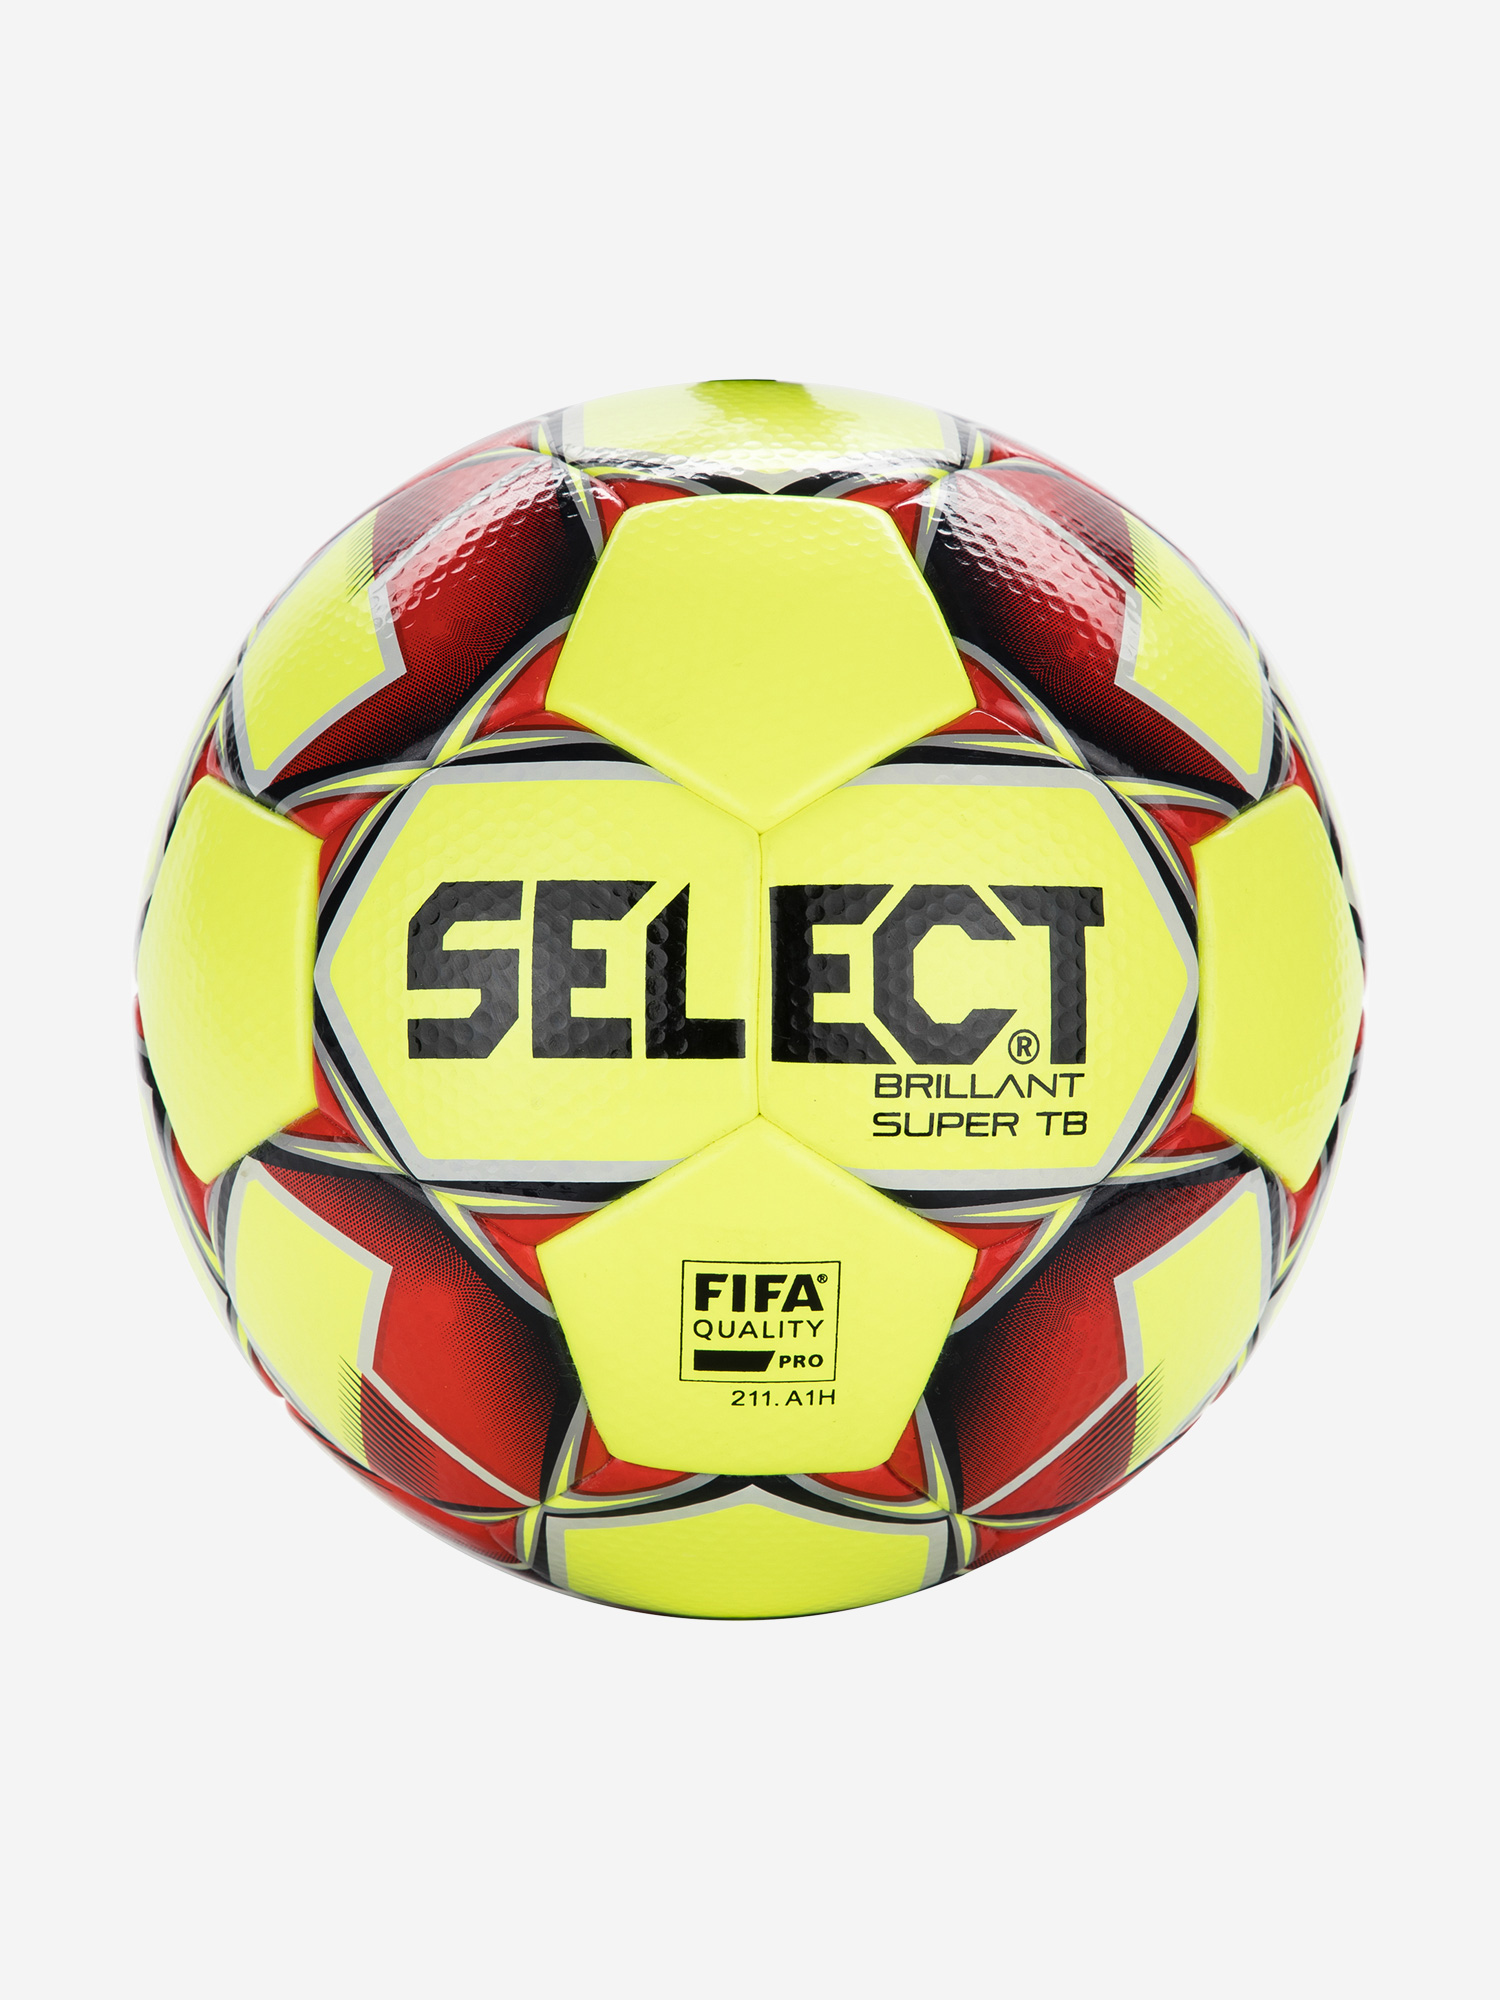 Fifa quality pro. Select Brilliant super TB. Футбольный мяч select Brilliant super. Select brillant super мяч. Мяч футбольный 5 select brillant super v23 (HS) FIFA quality Pro.